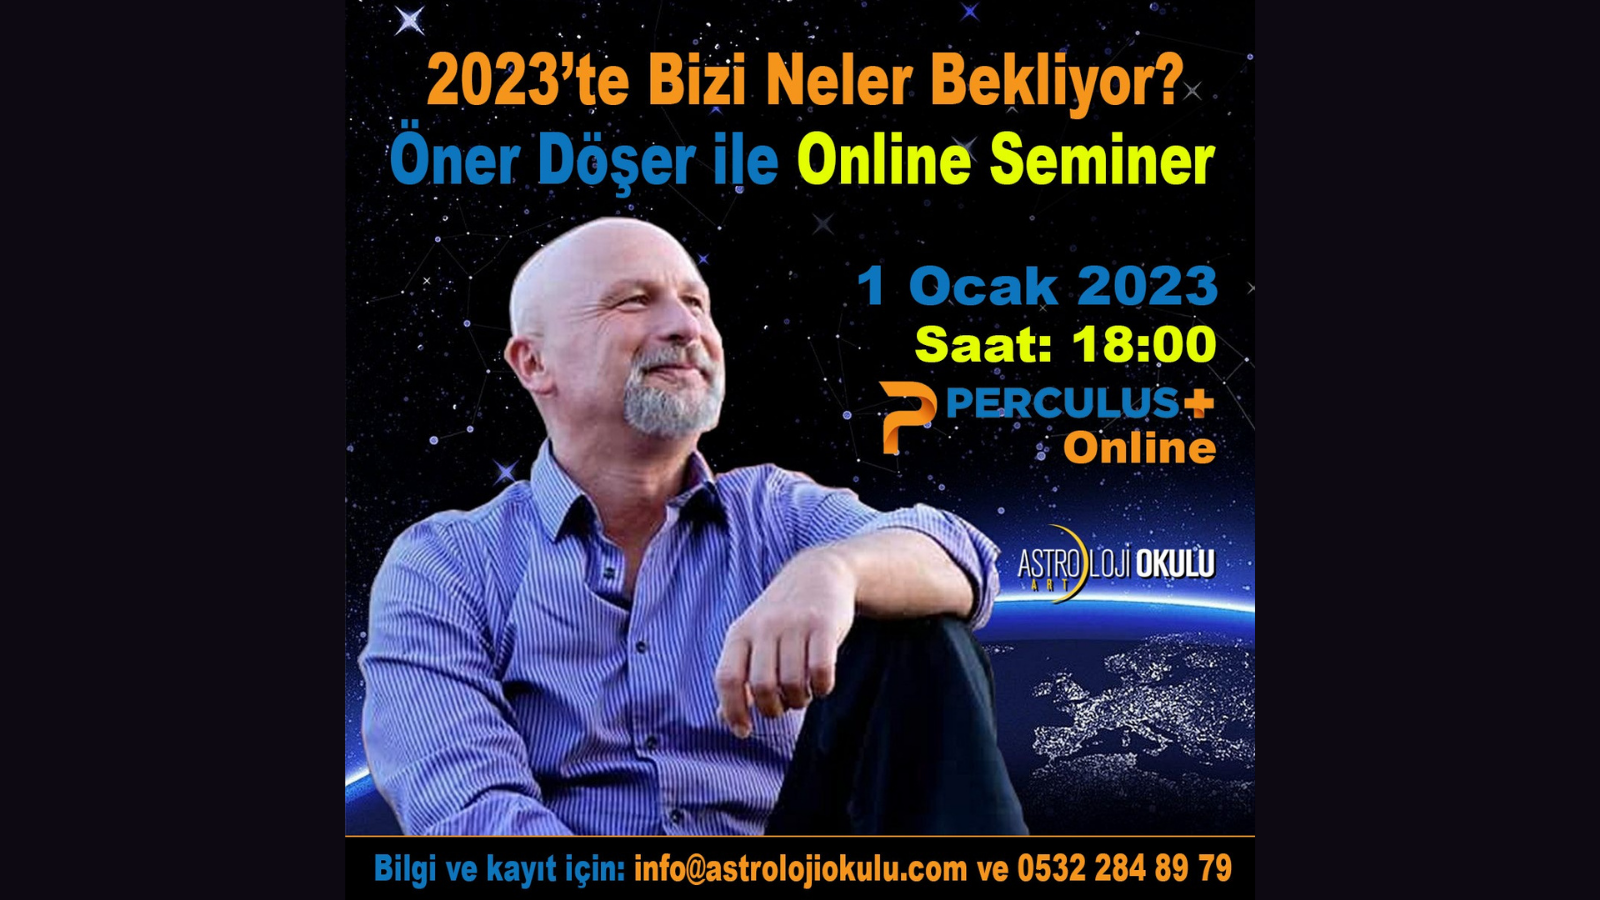 (Türkçe) 2023’te Bizi Neler Bekliyor? – Öner Döşer ile Online Seminer